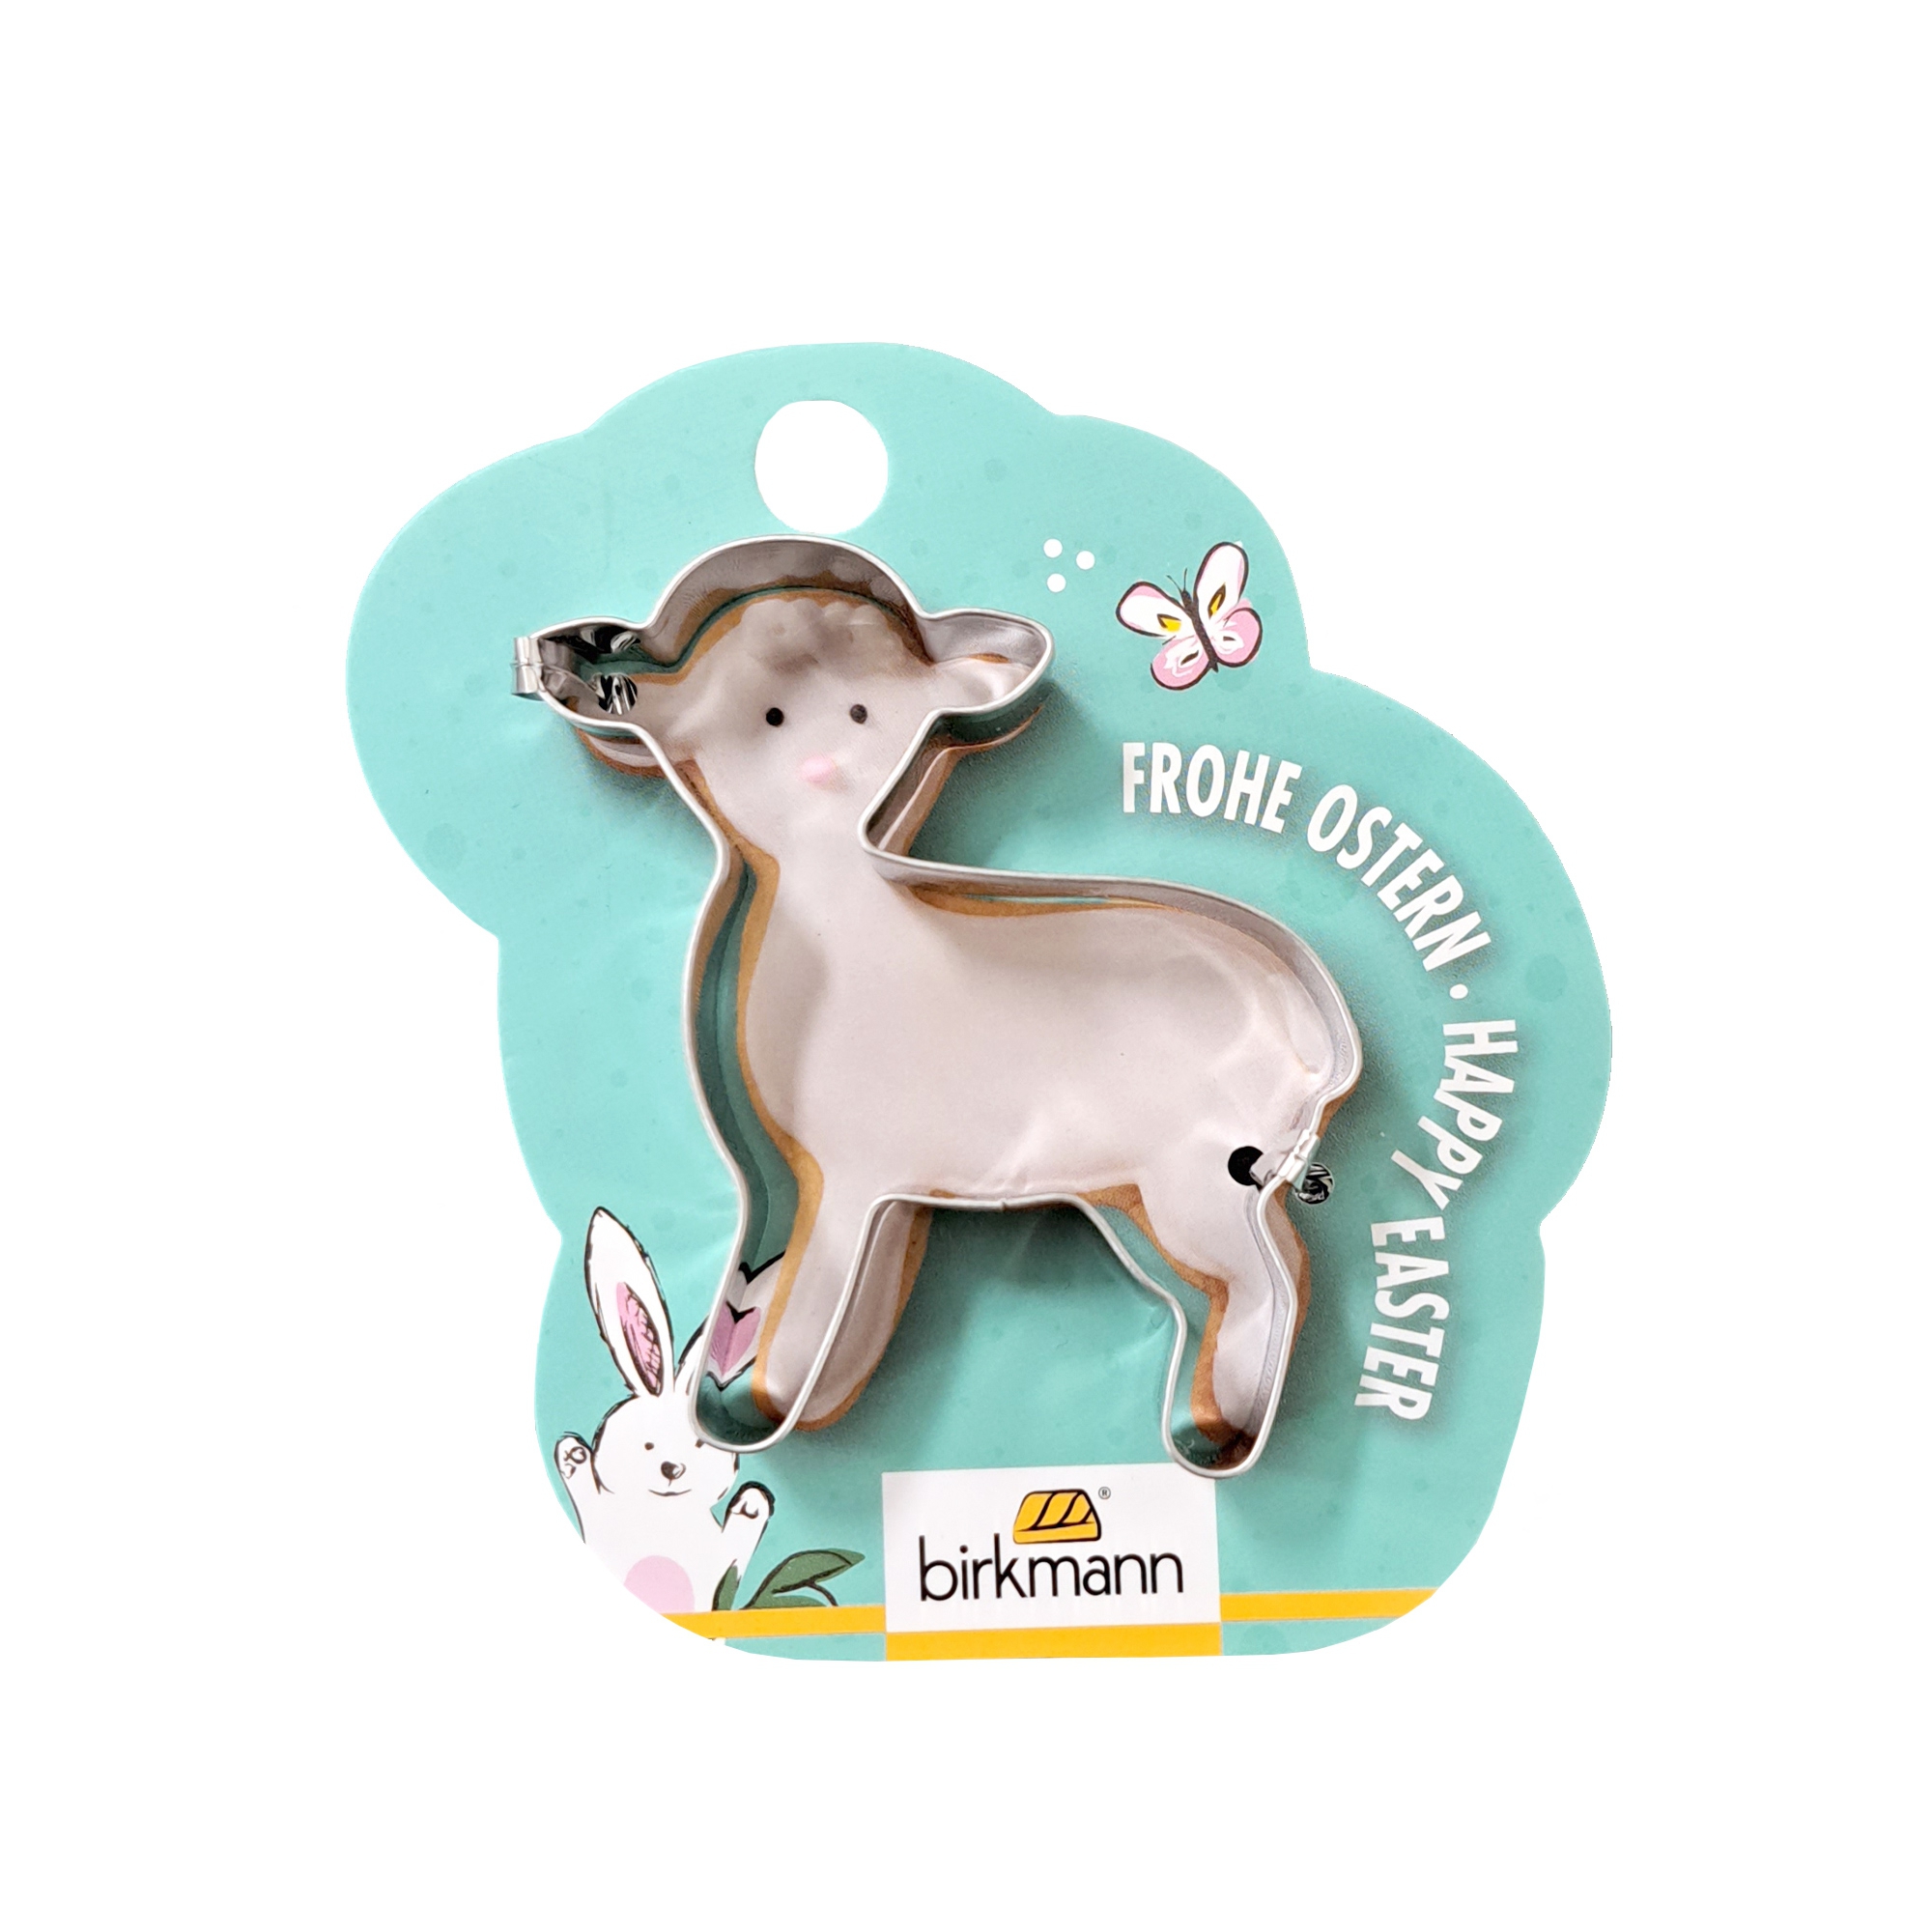 Birkmann - Easter cookie cutter - different motifs - Lamb